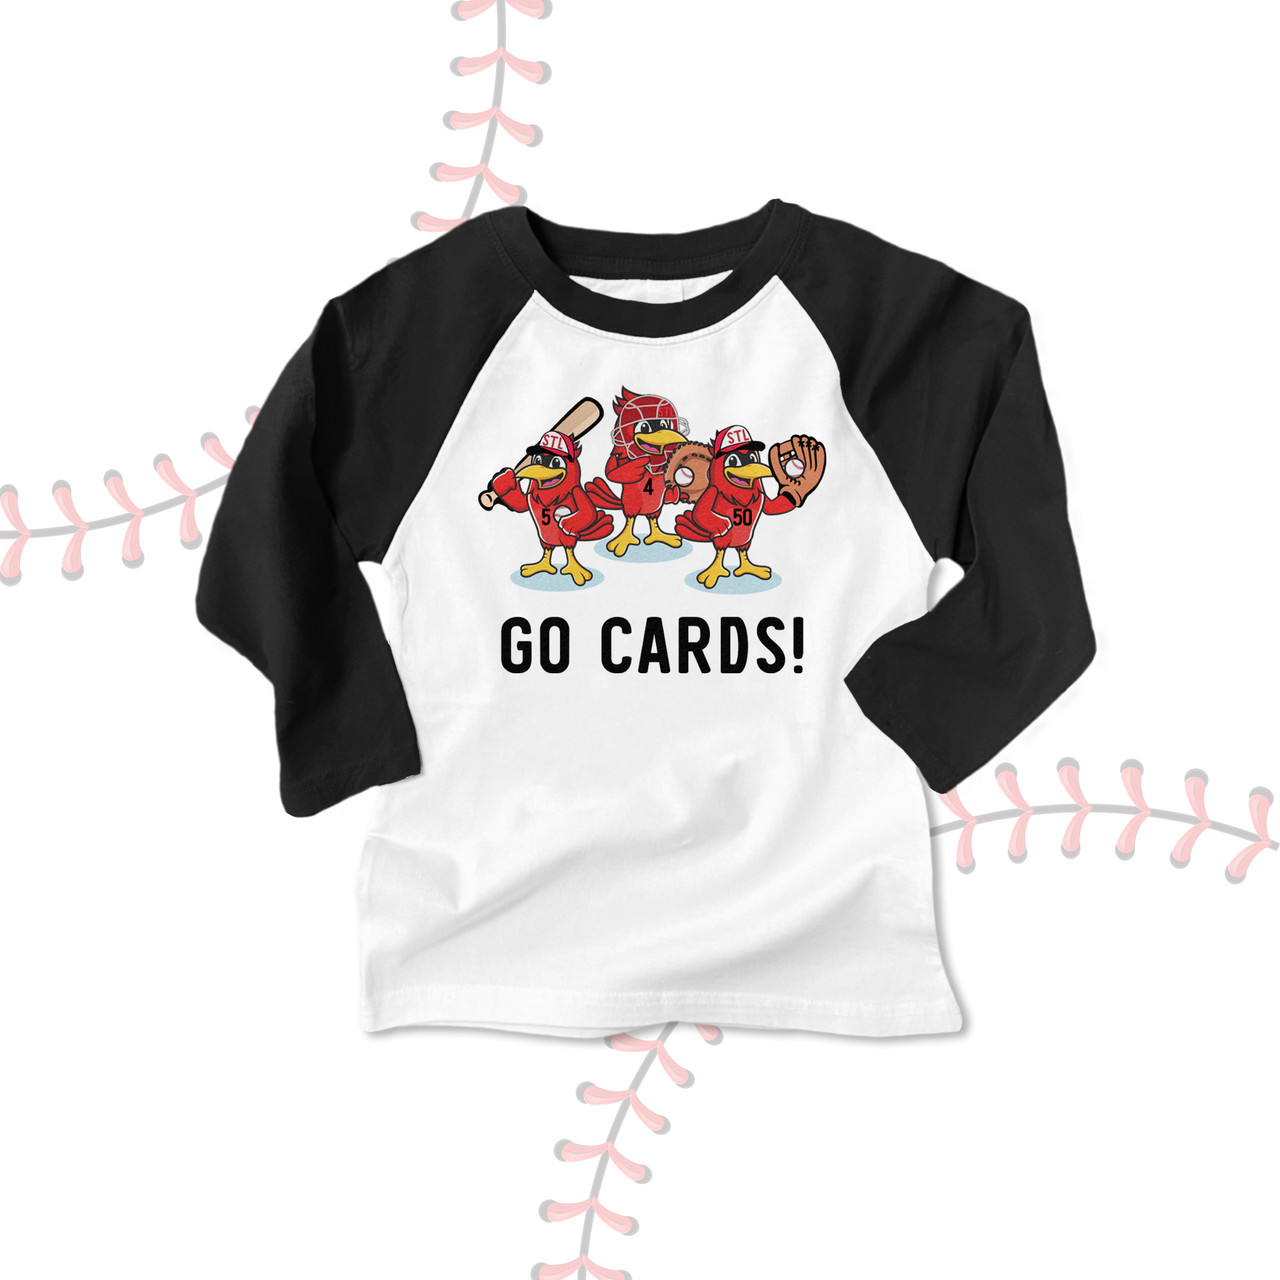 cardinals kids shirt, stl baseball fredbird custom raglan t-shirt